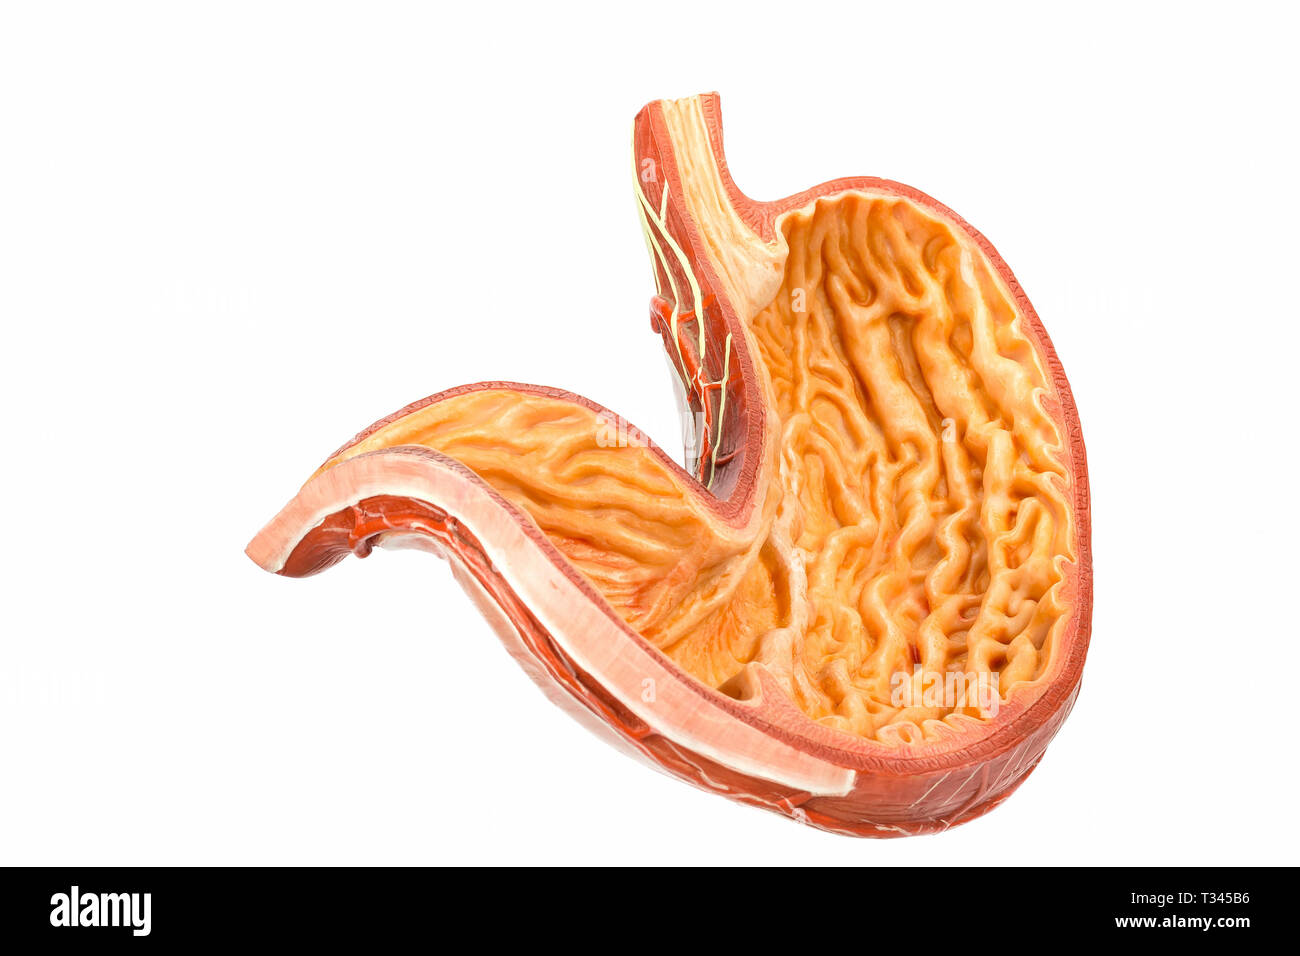 Modelo dentro del estómago humano aislado sobre fondo blanco. Foto de stock